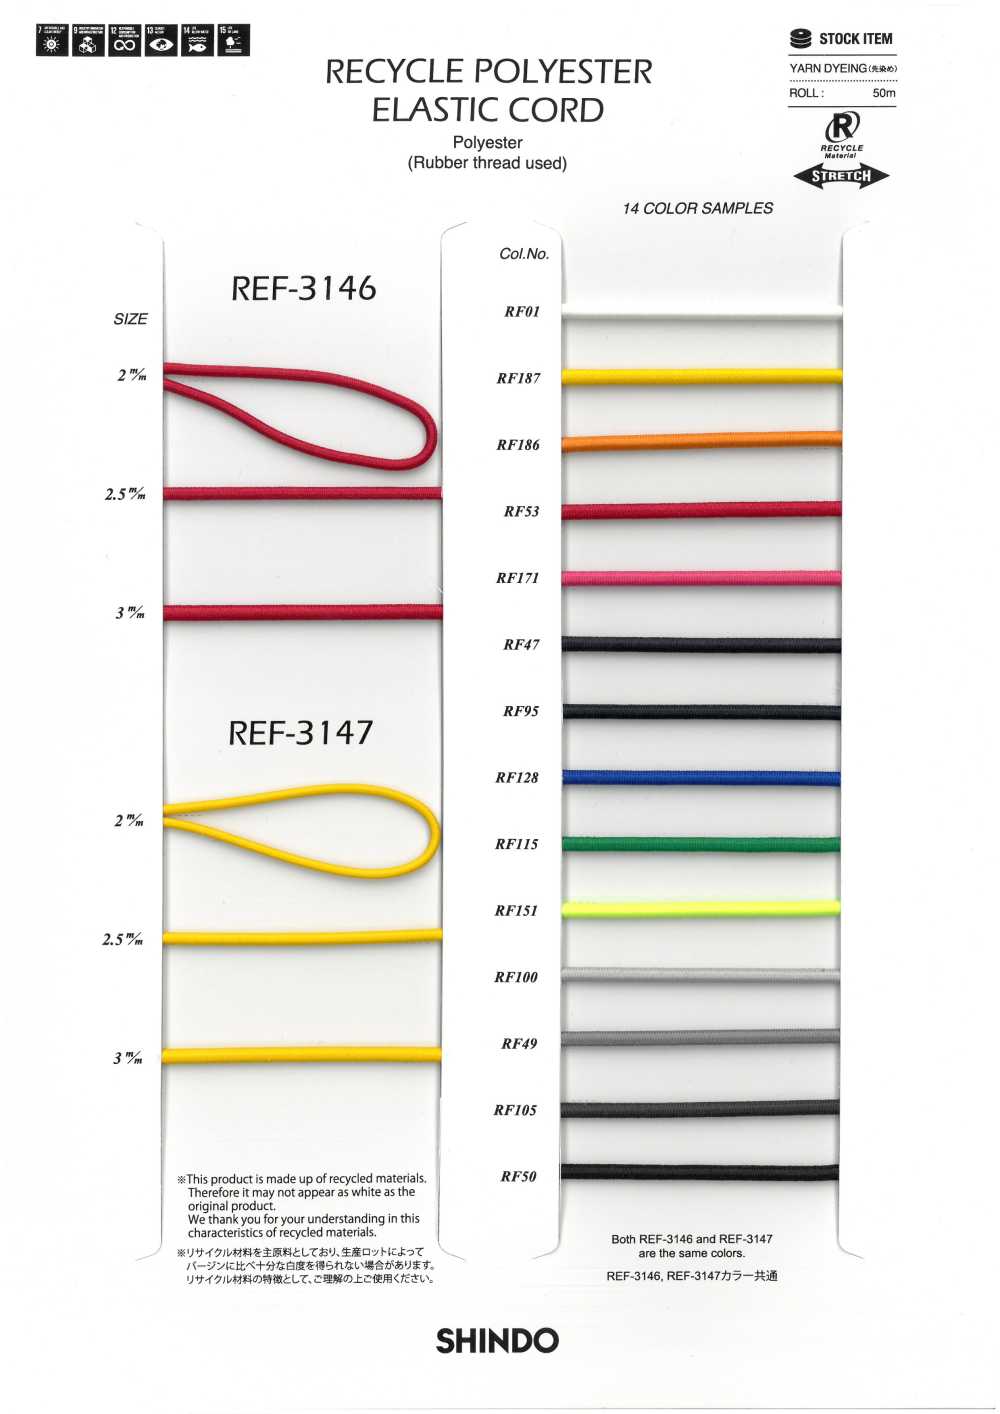 REF-3147 Cordón Elástico De Poliéster Reciclado (Tipo Duro)[Cordón De Cinta De Cinta] SHINDO(SIC)